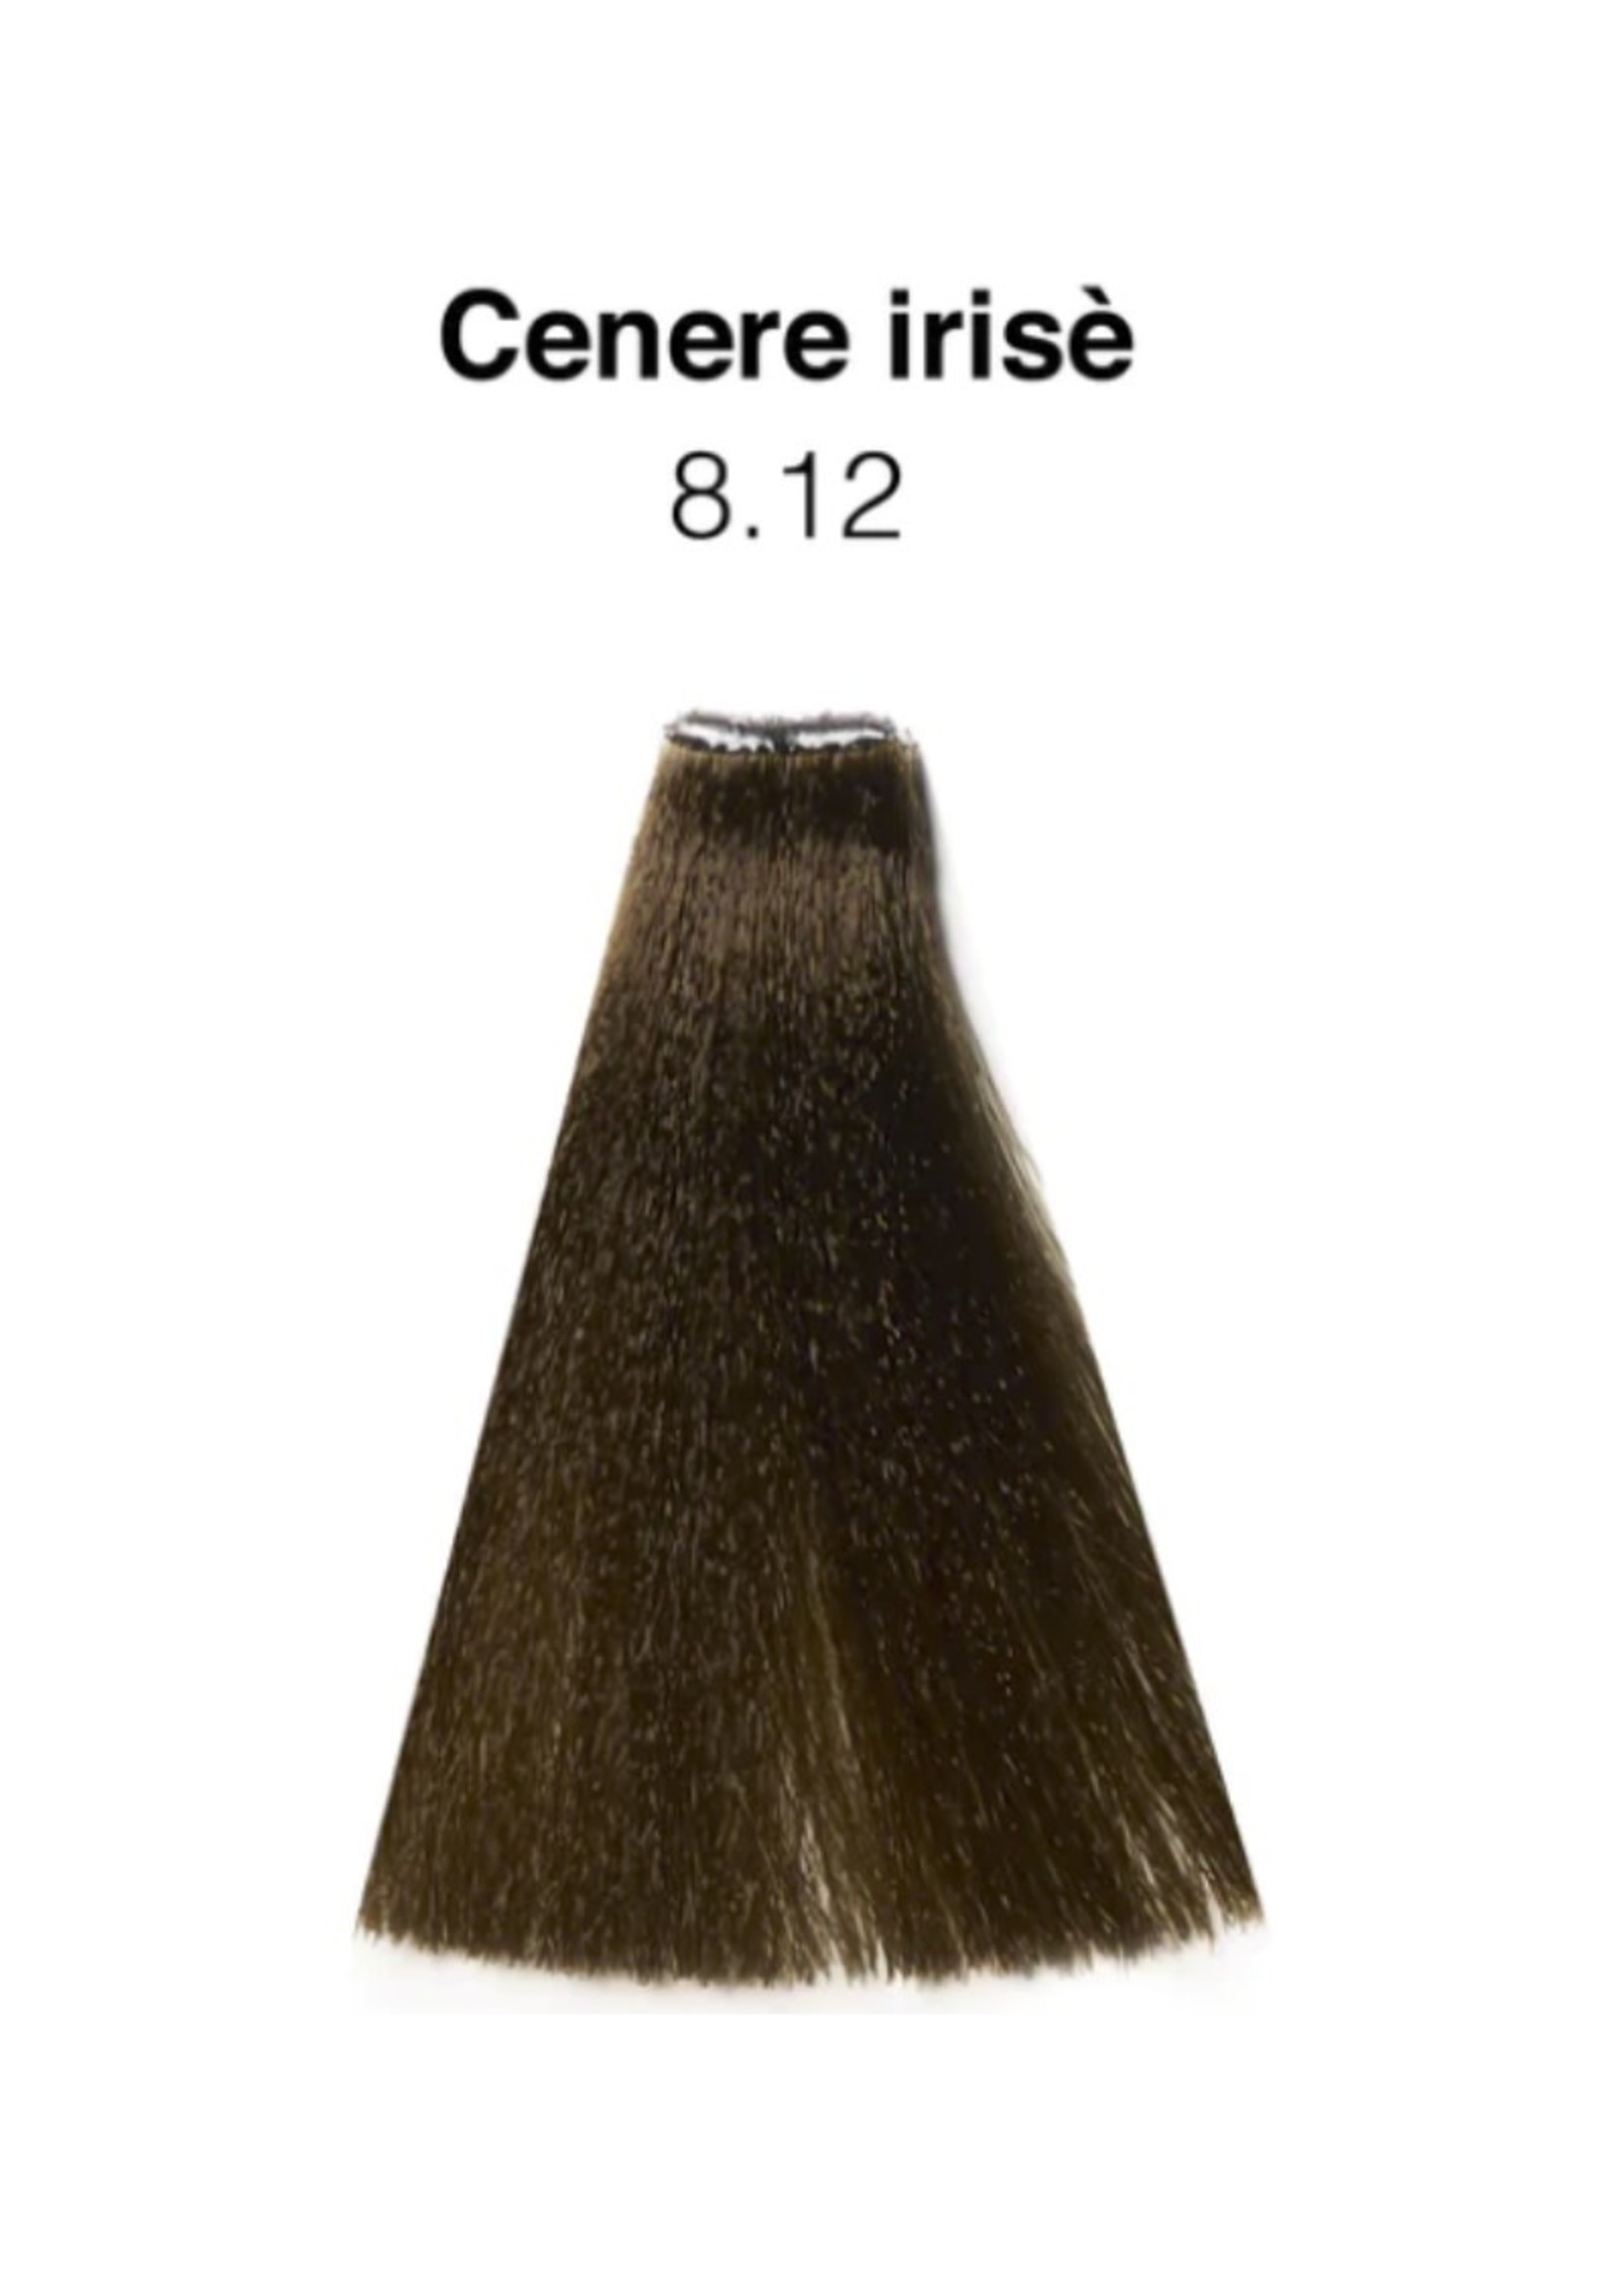 Nouvelle Nouvelle Hair Colour 8.12 Irise Ash Light Blonde 100ml